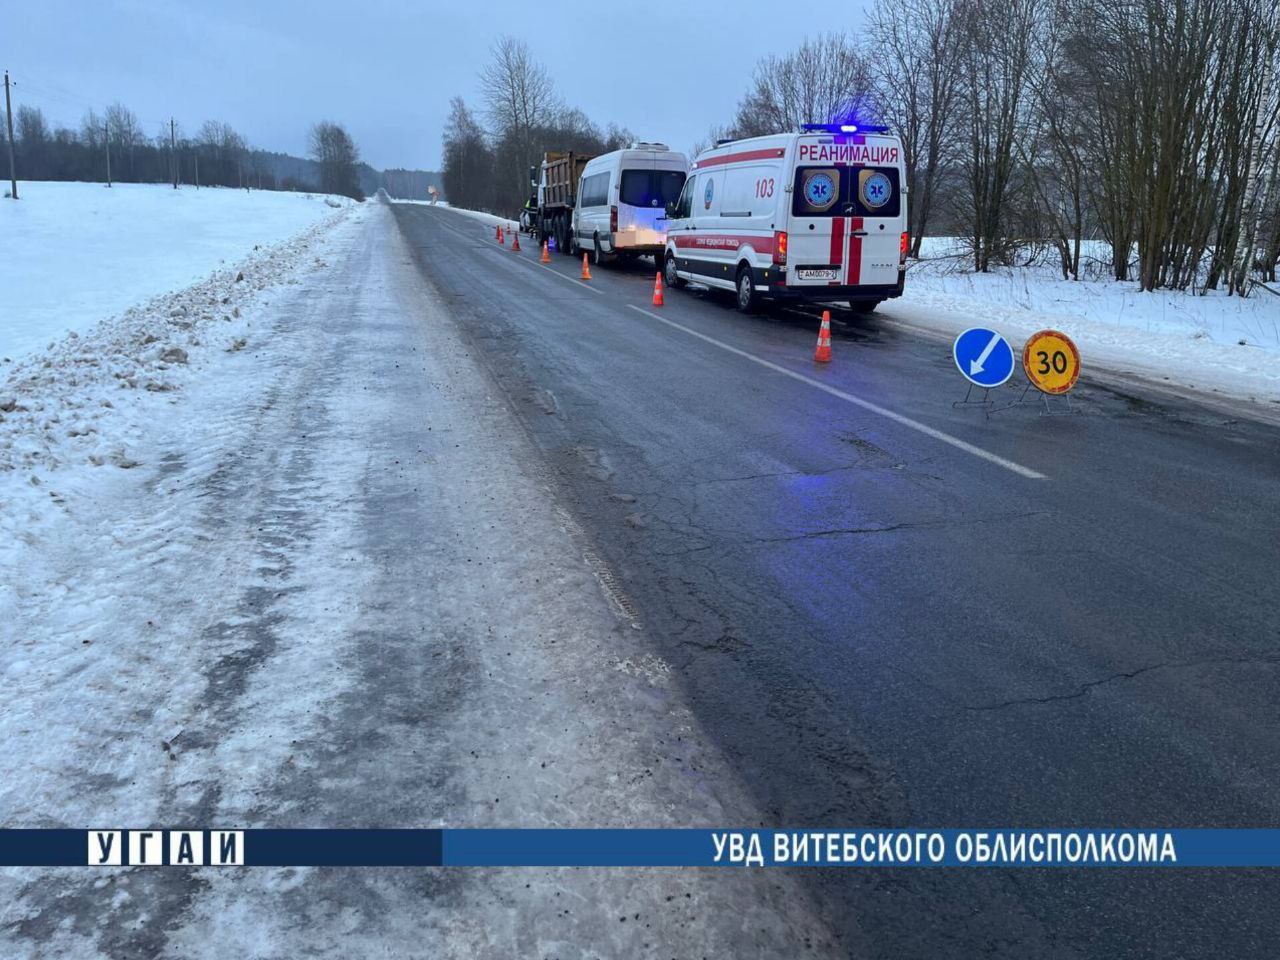 Микроавтобус врезался в самосвал под Витебском, пострадали 7 человек.  Фото ГАИ